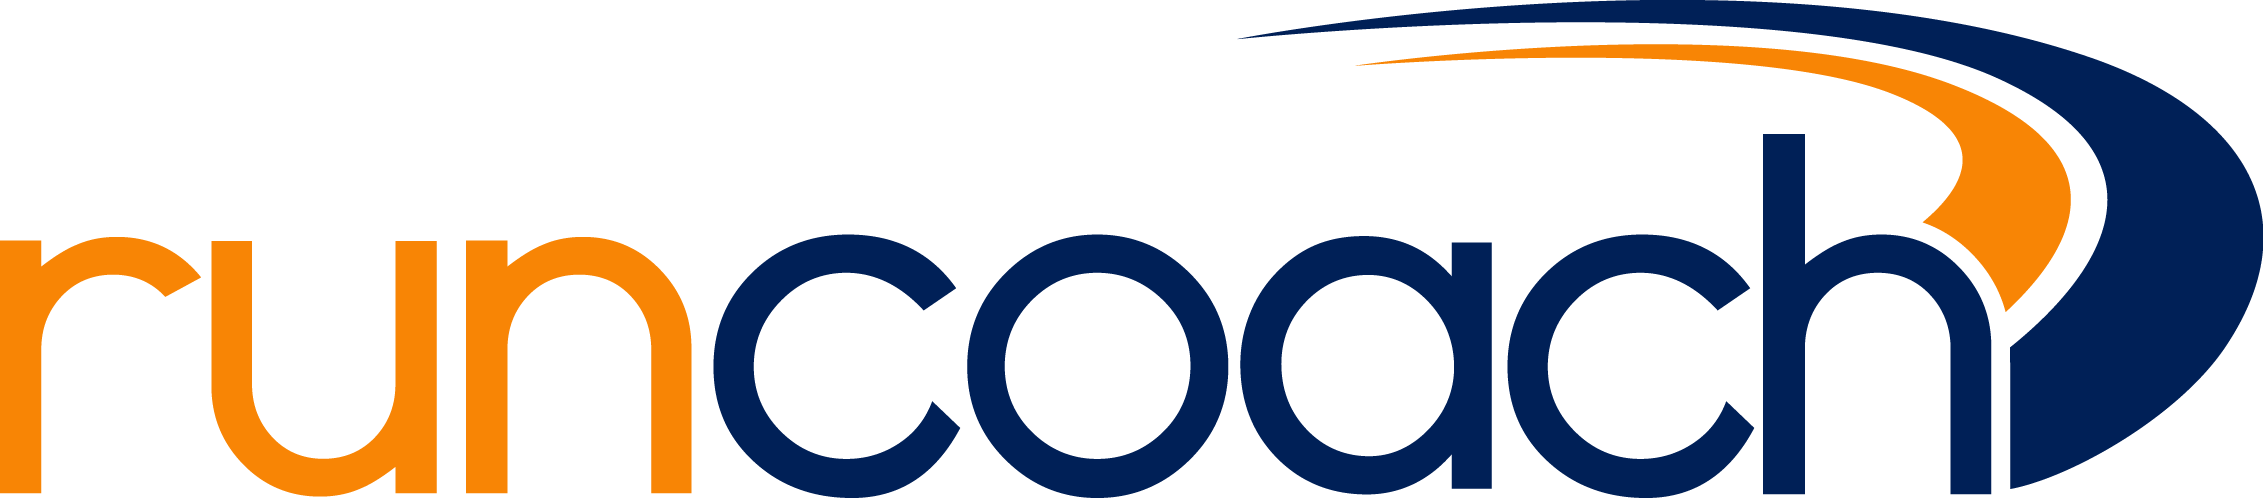 runcoach Logo 2016